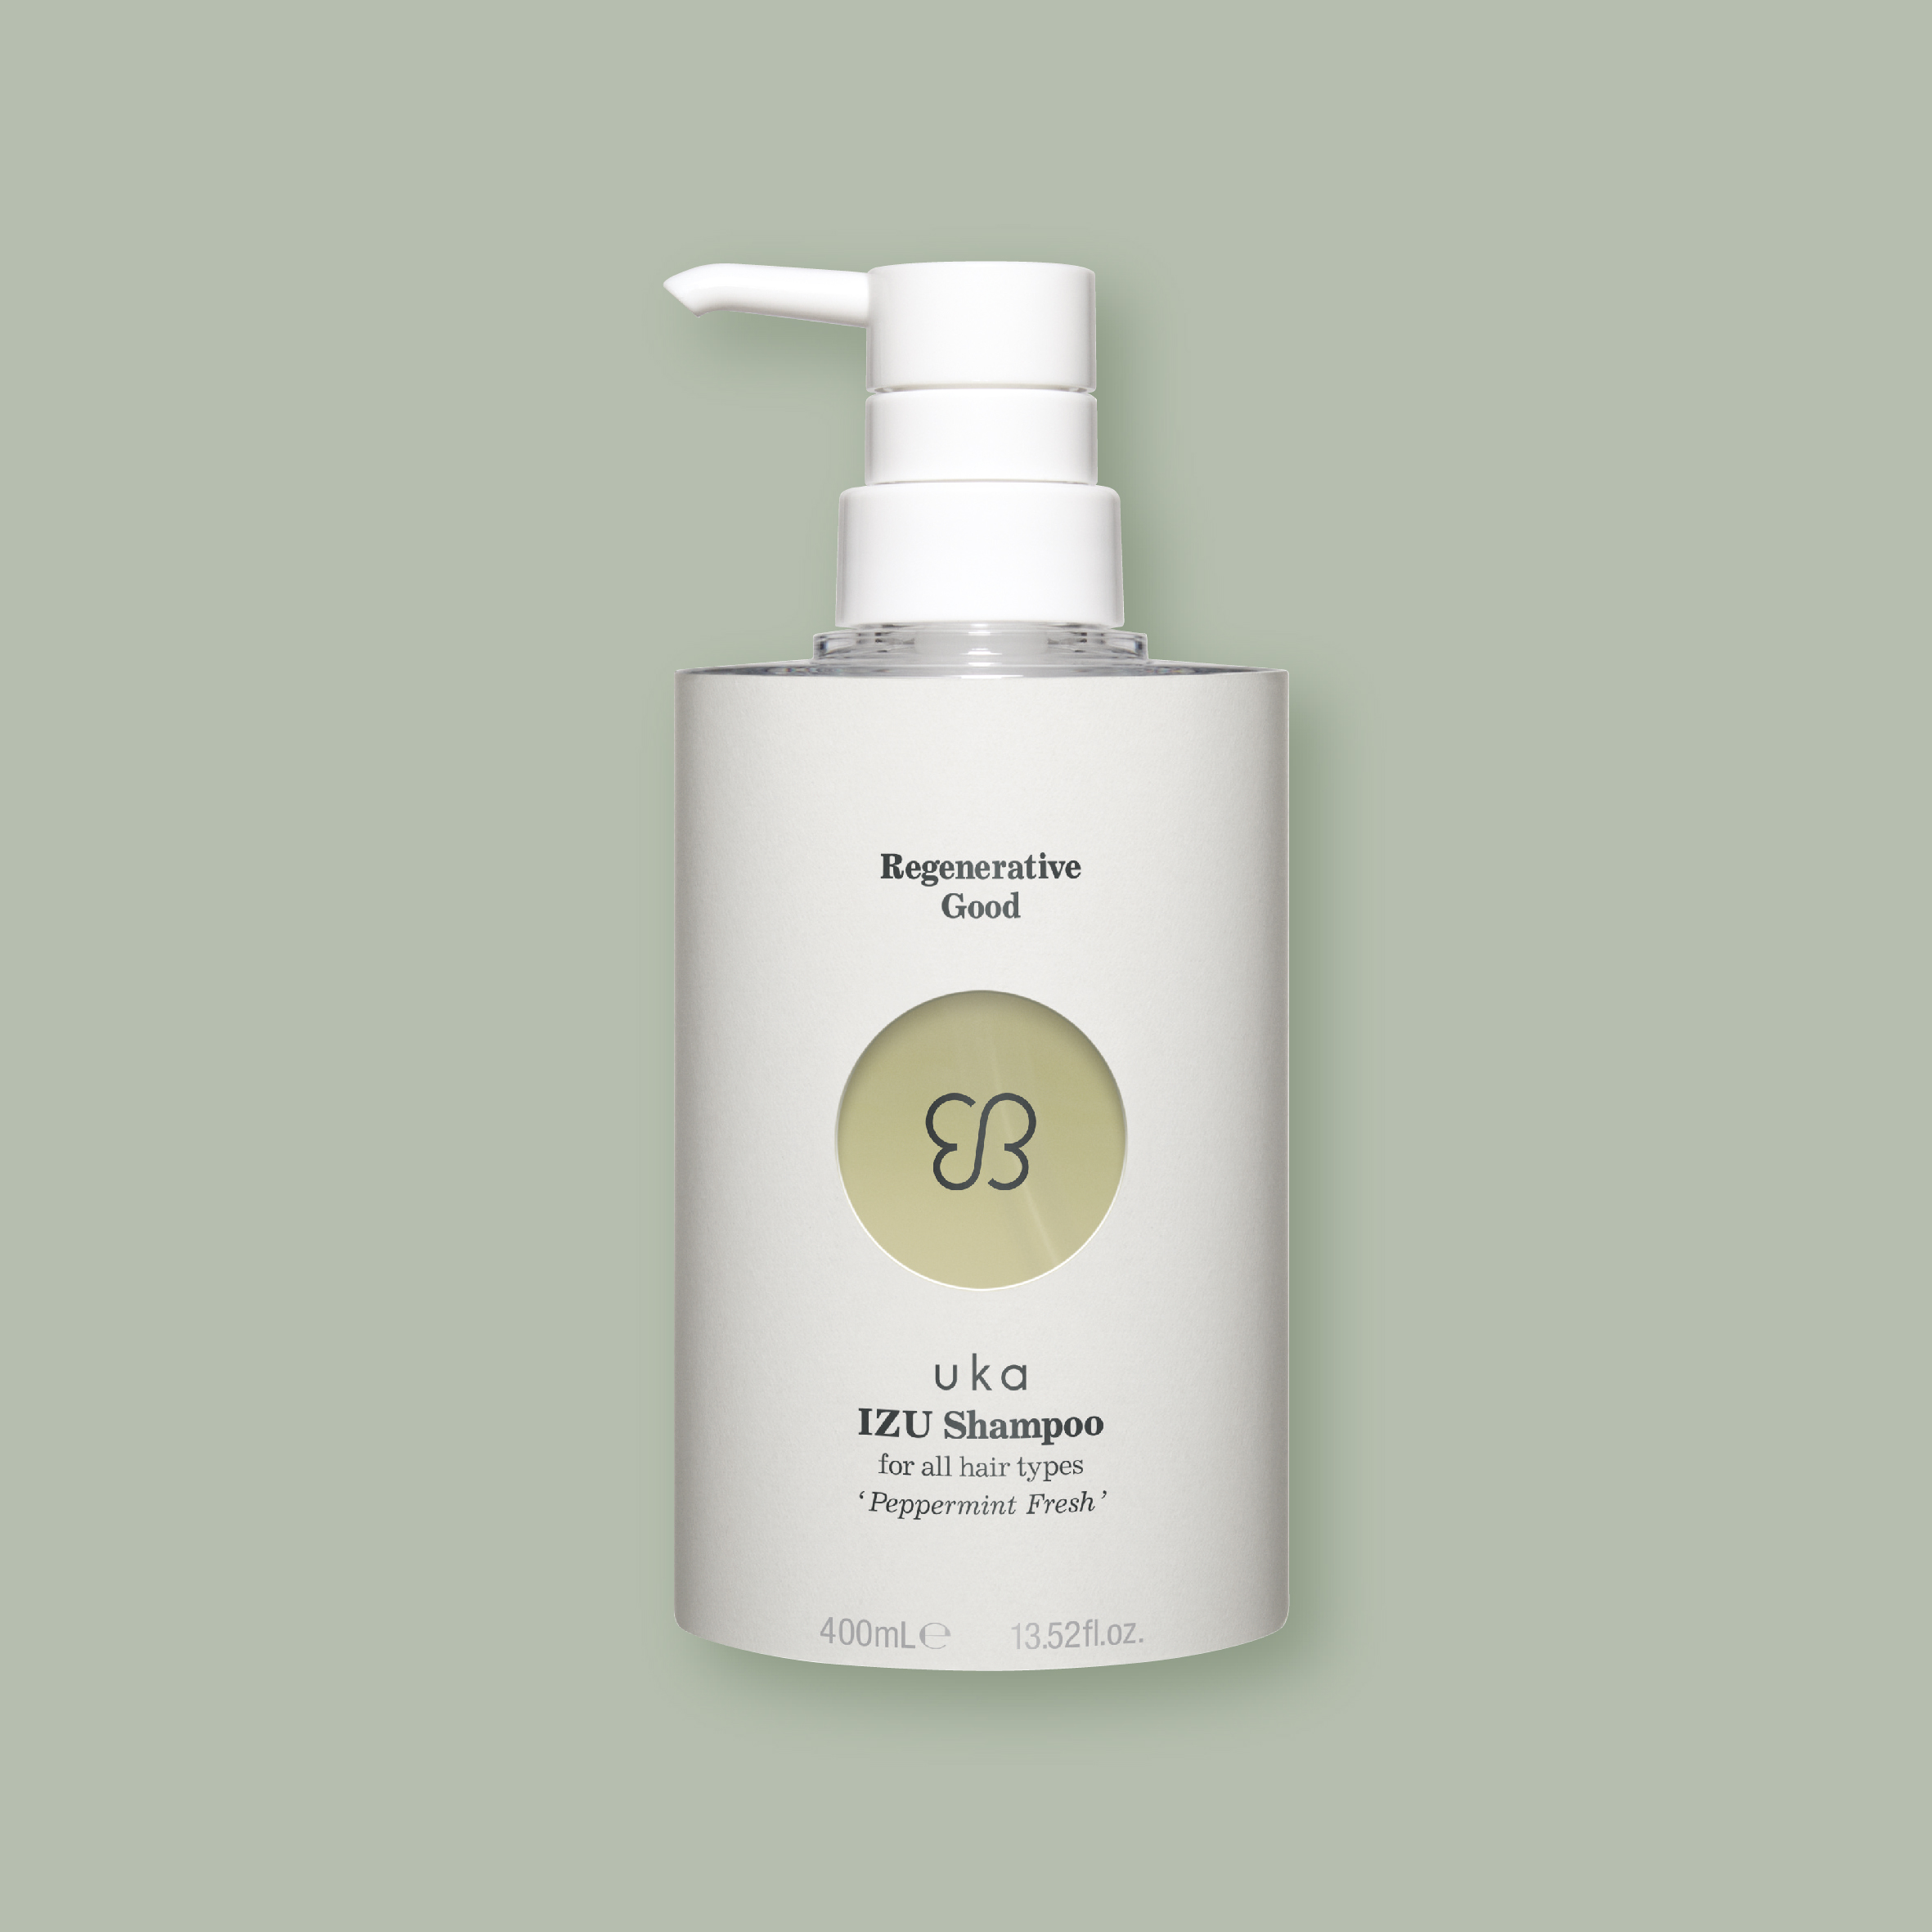 uka IZU Shampoo for all hair types 'Peppermint Fresh' 400mL Bottle